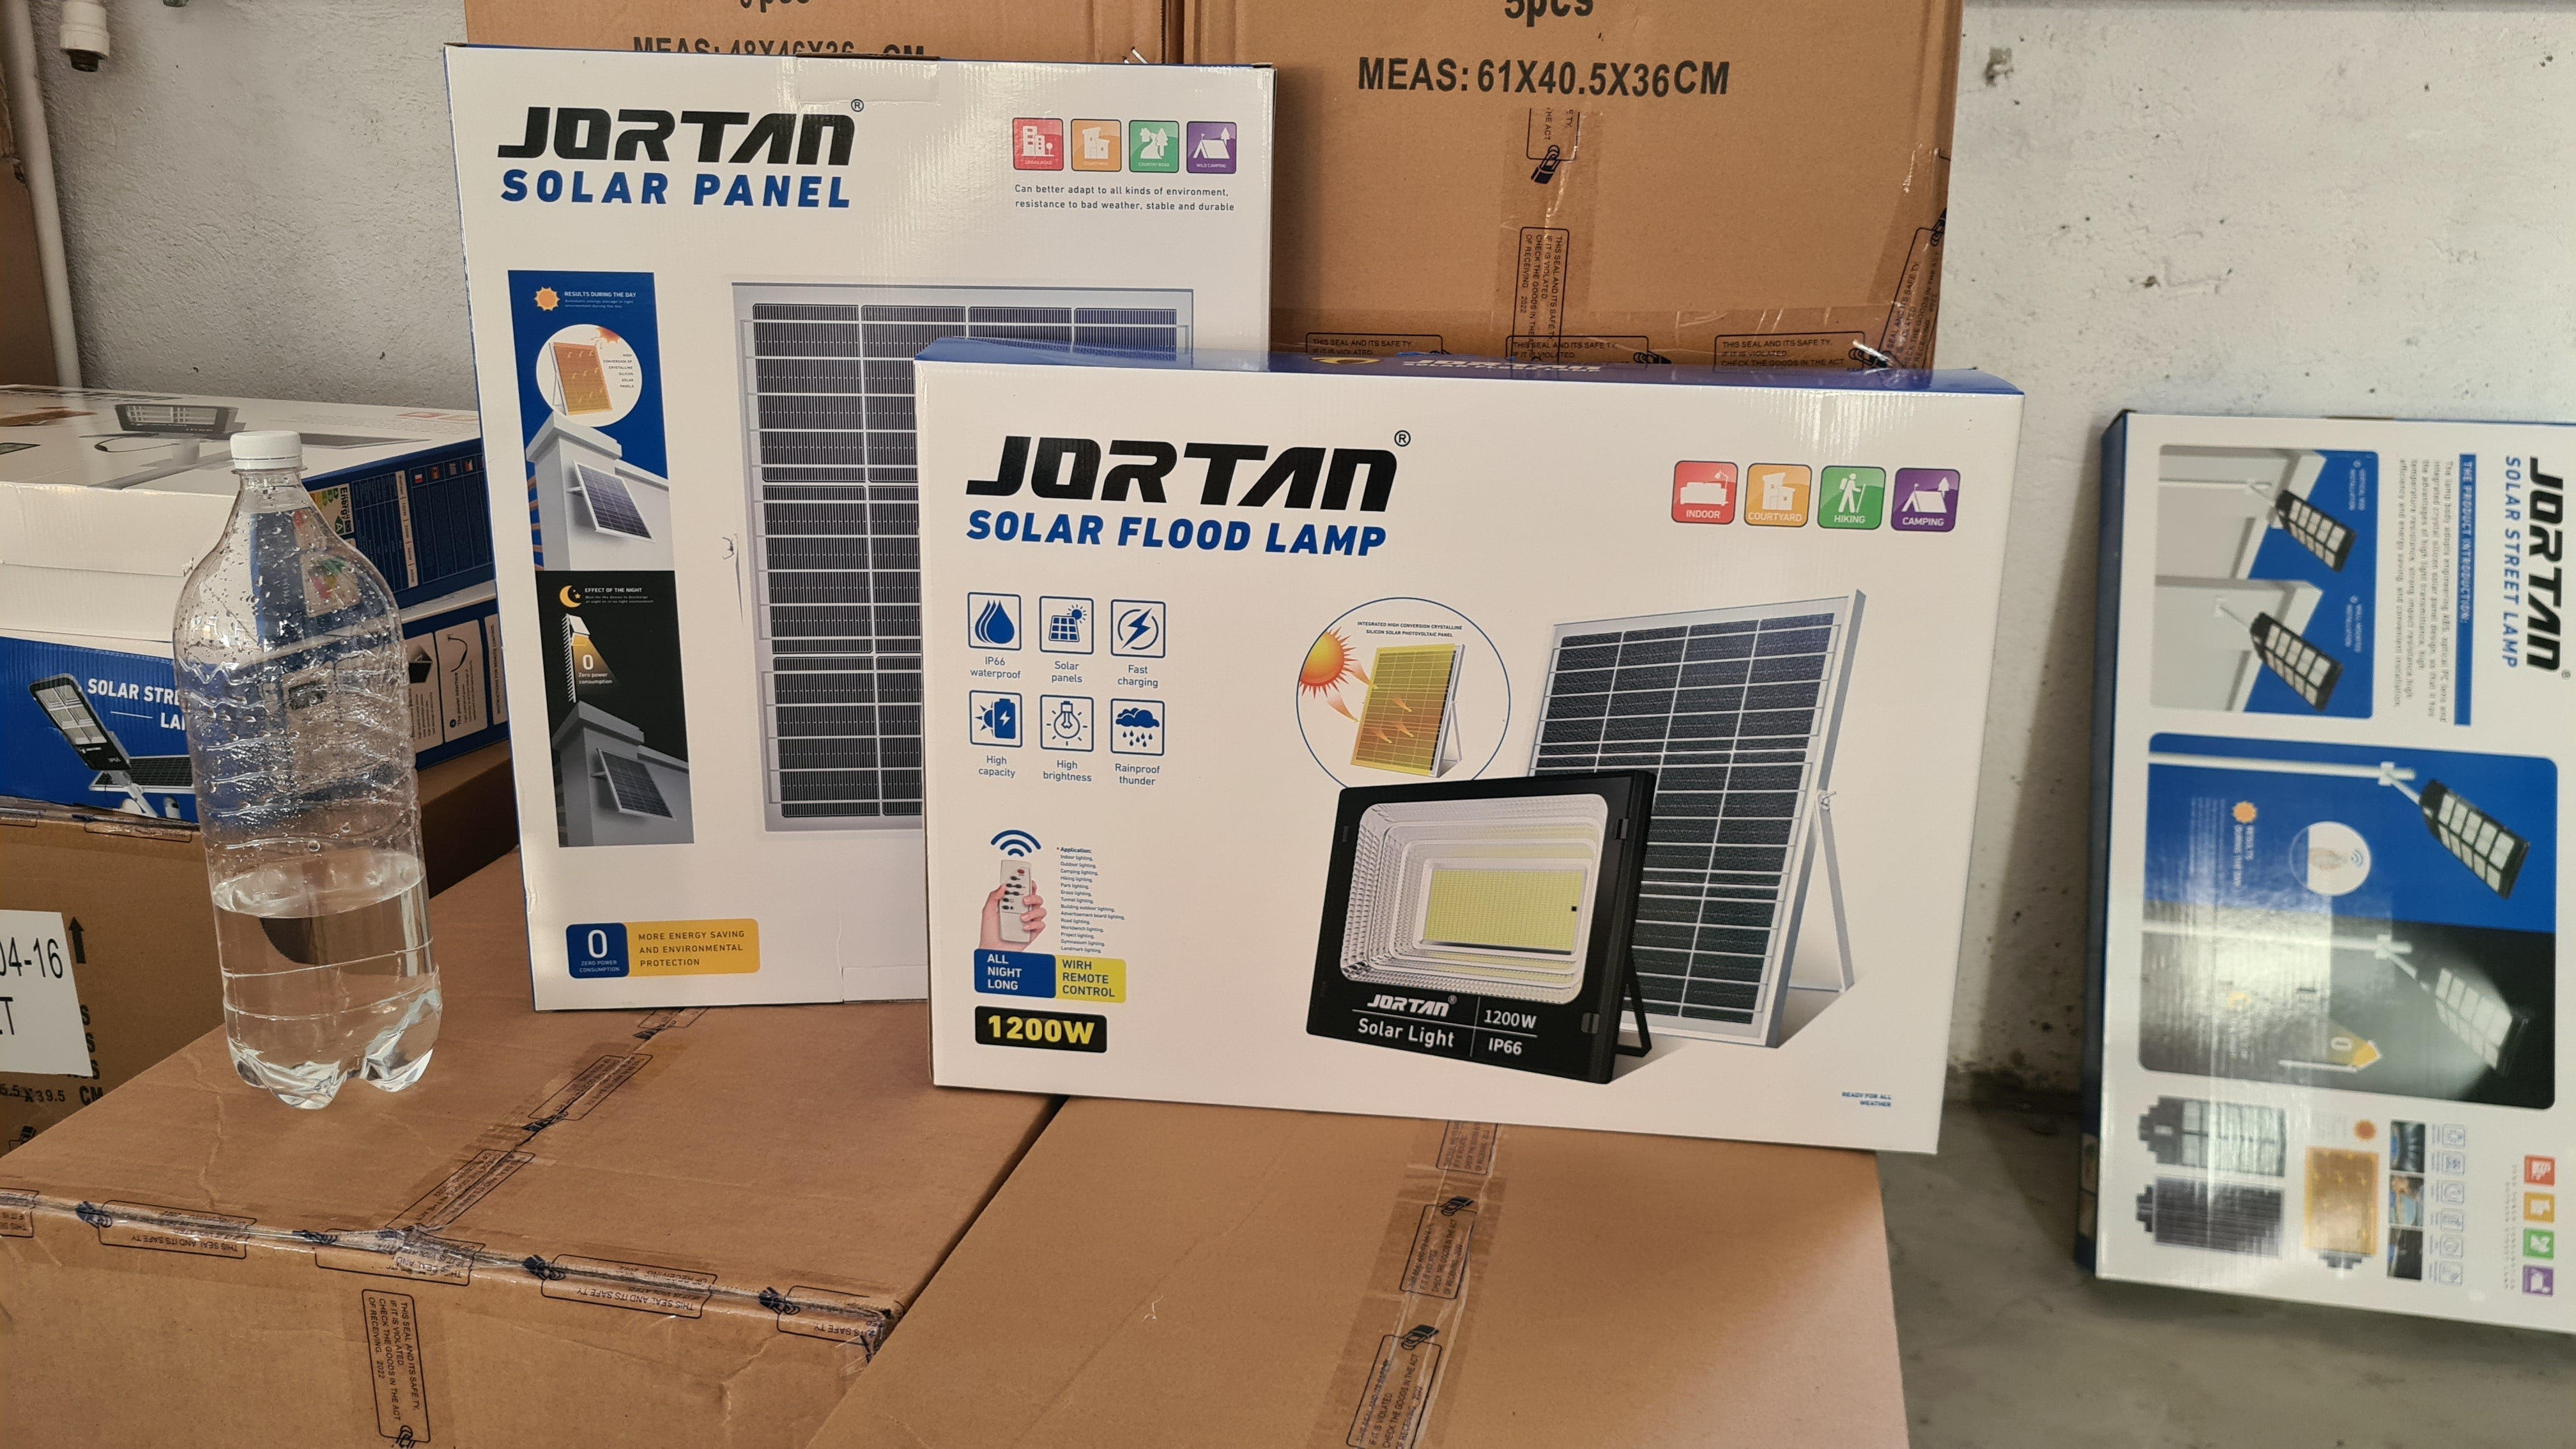 Proiector Solar Jortan 1200W, Lampa Incarcare Solara +Panou Solar